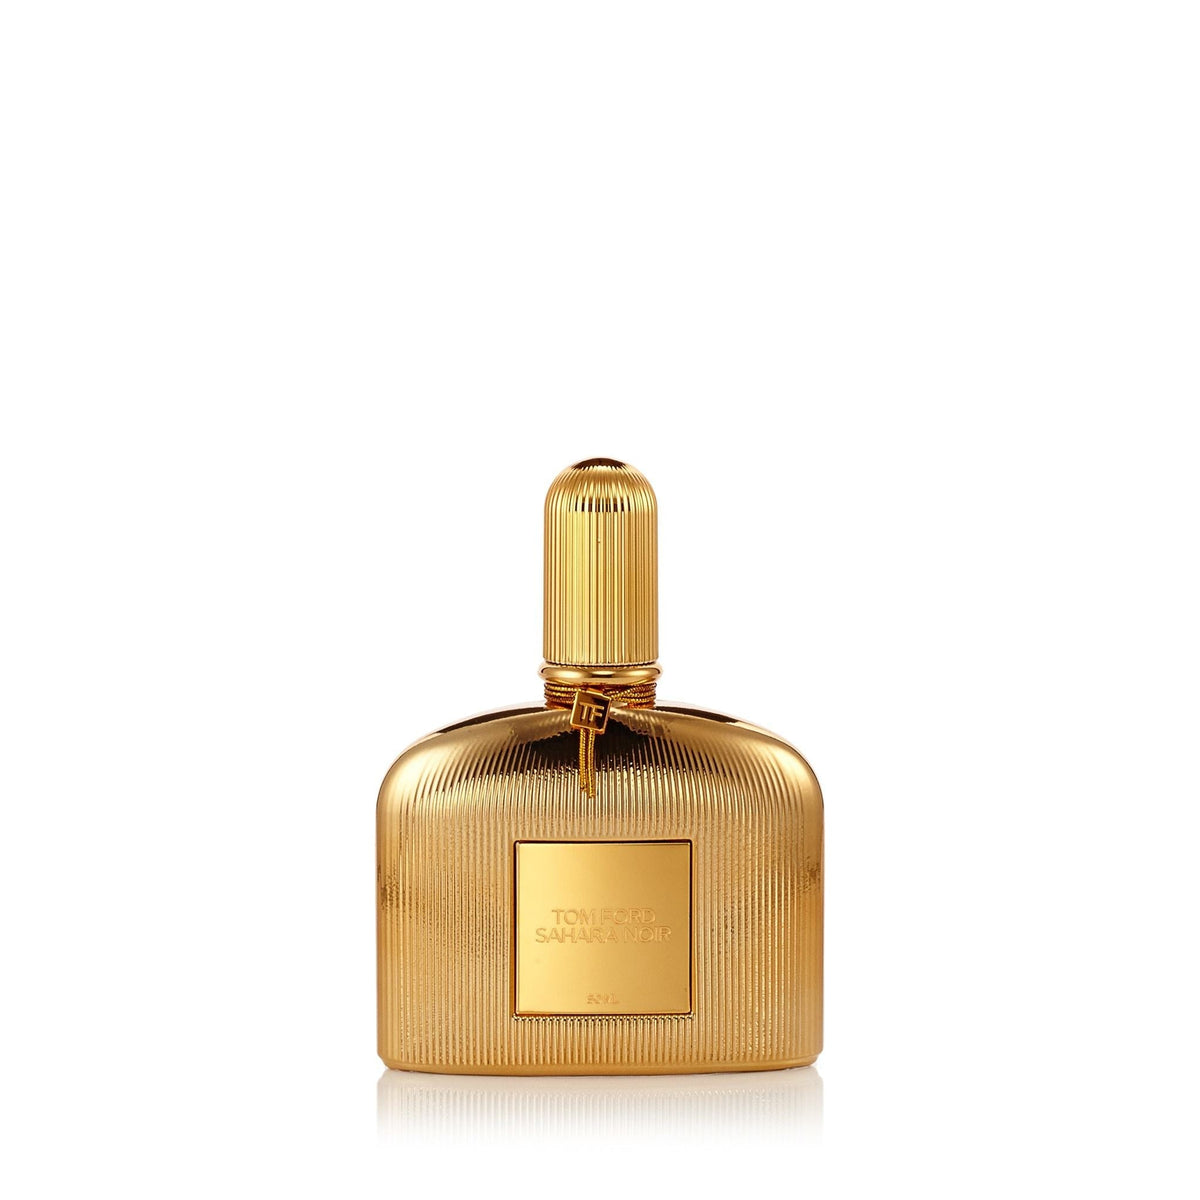 Sahara Noir Eau de Parfum Spray for Women by Tom Ford 1.7 oz.